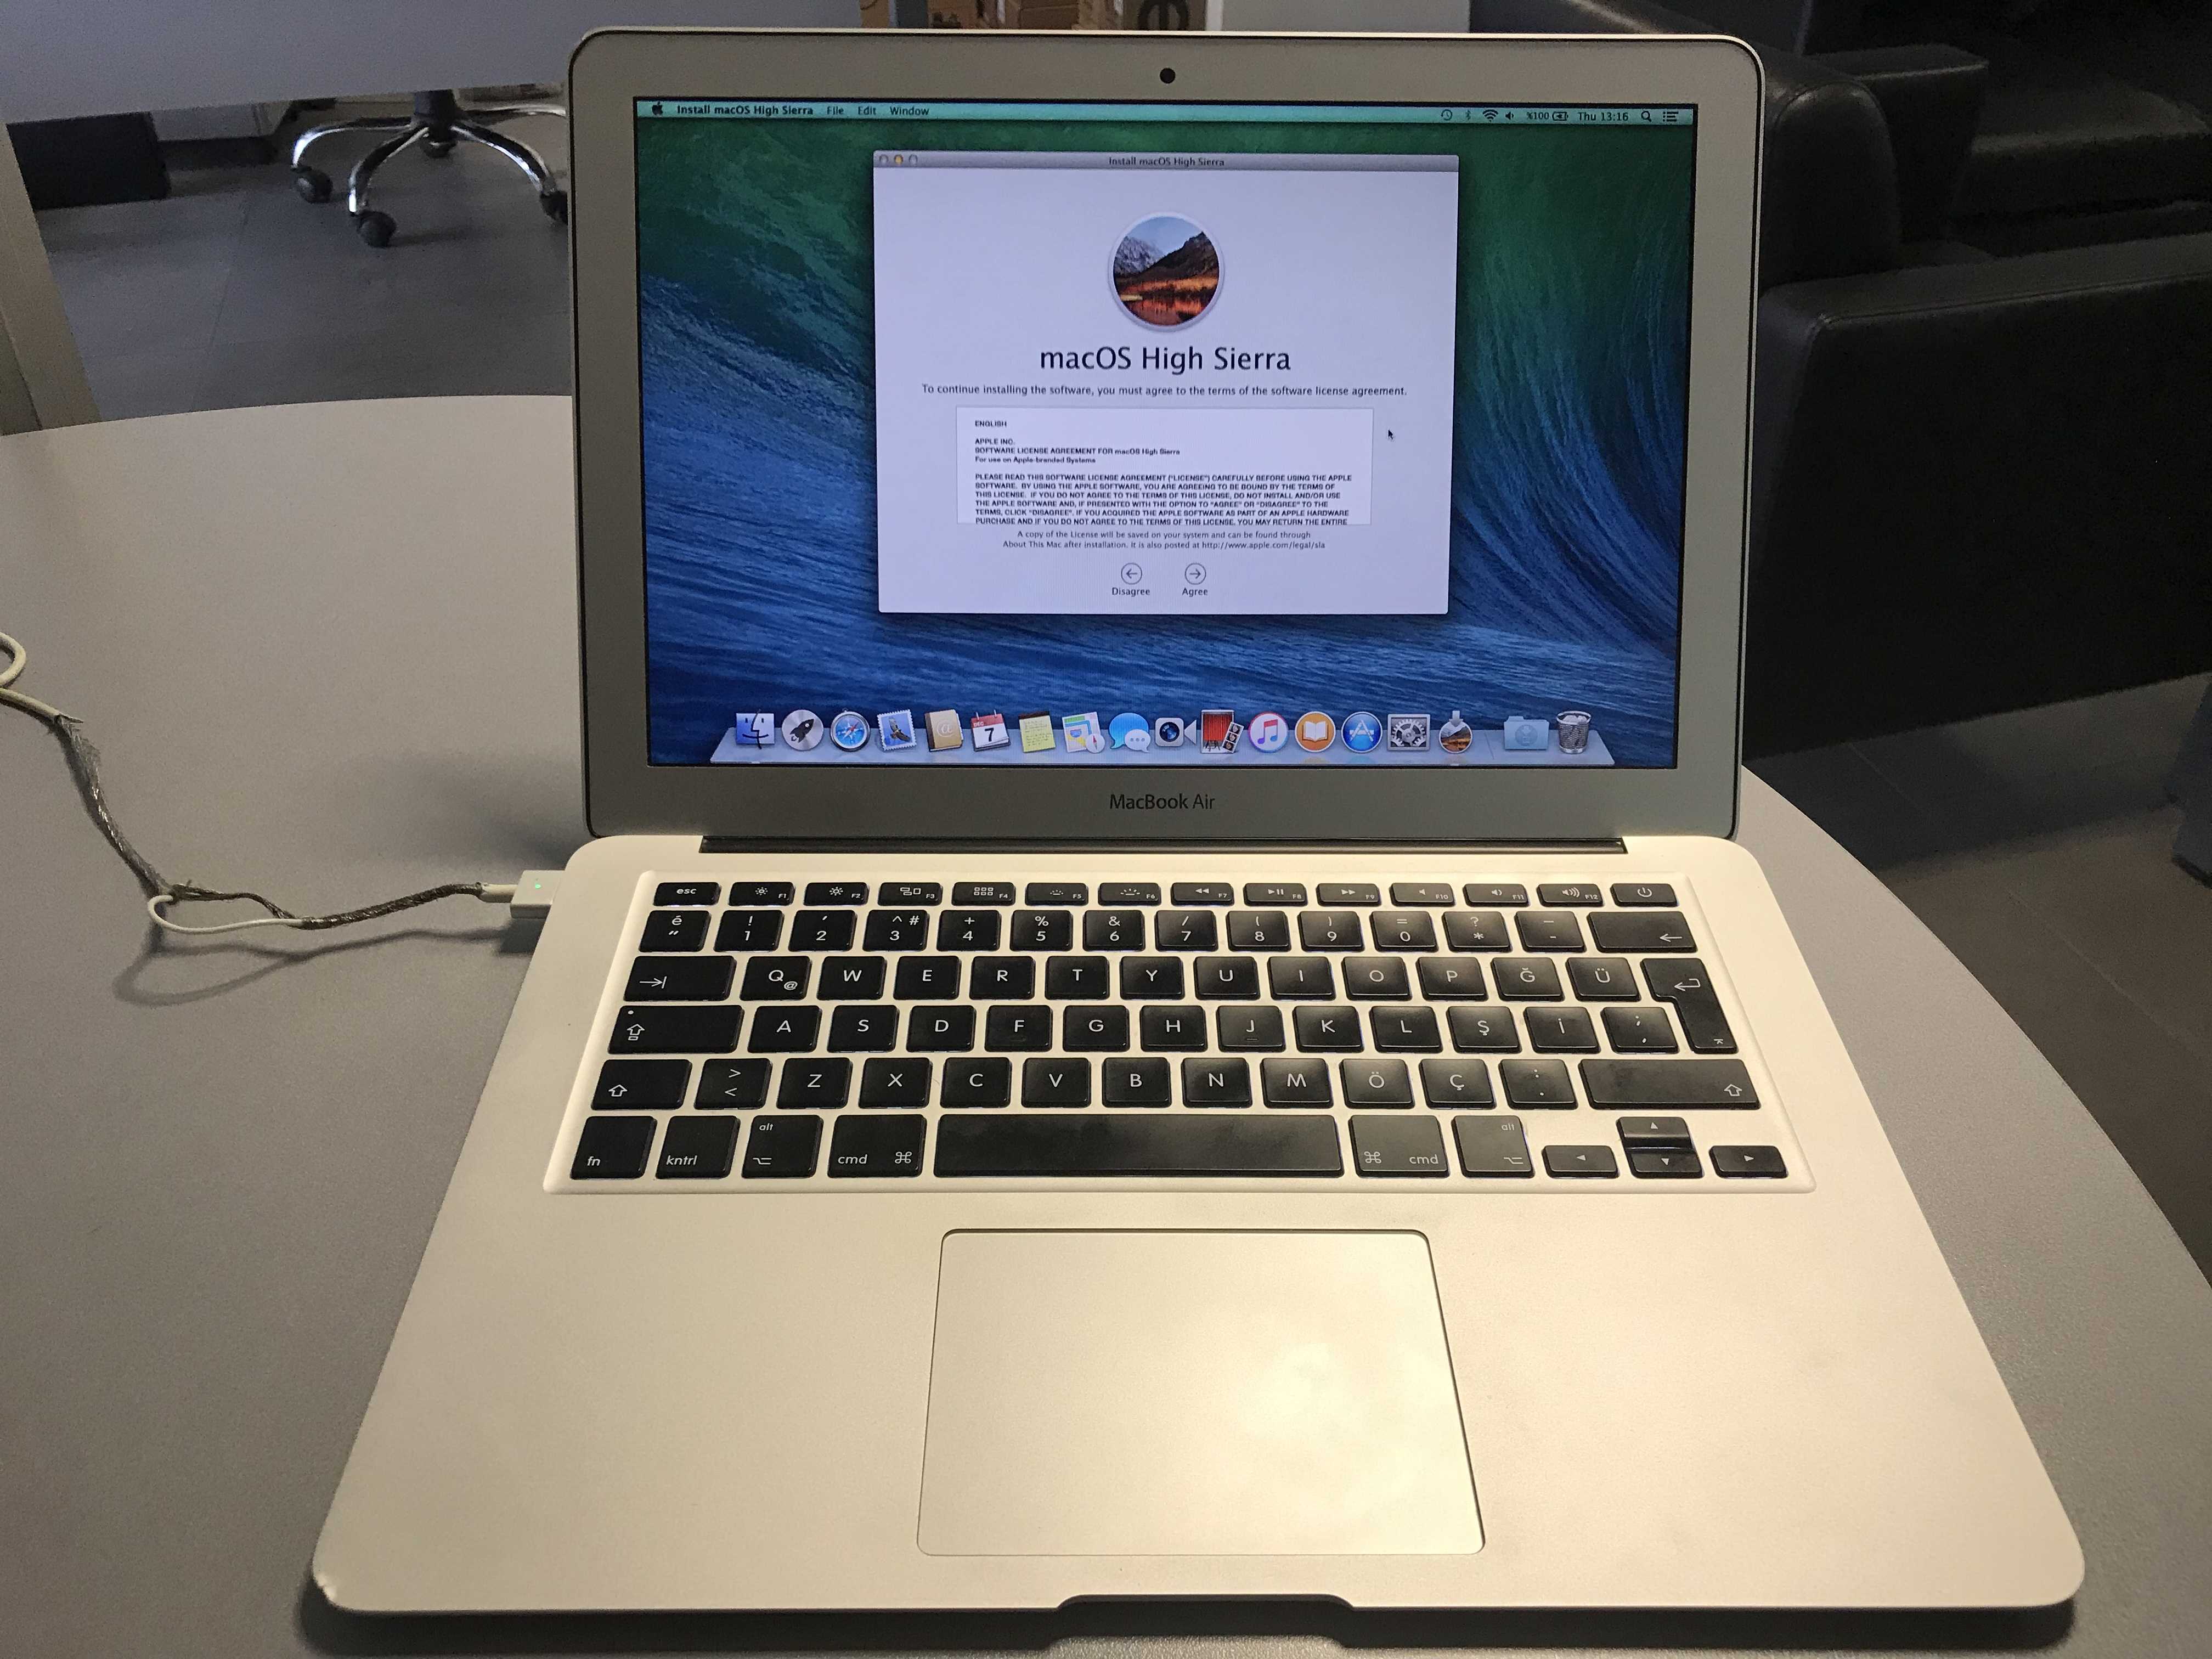 Ноутбук Apple The new MacBook Air 13" (Z0NZ0001U) - подробные характеристики обзоры видео фото Цены в интернет-магазинах где можно купить ноутбук Apple The new MacBook Air 13" (Z0NZ0001U)